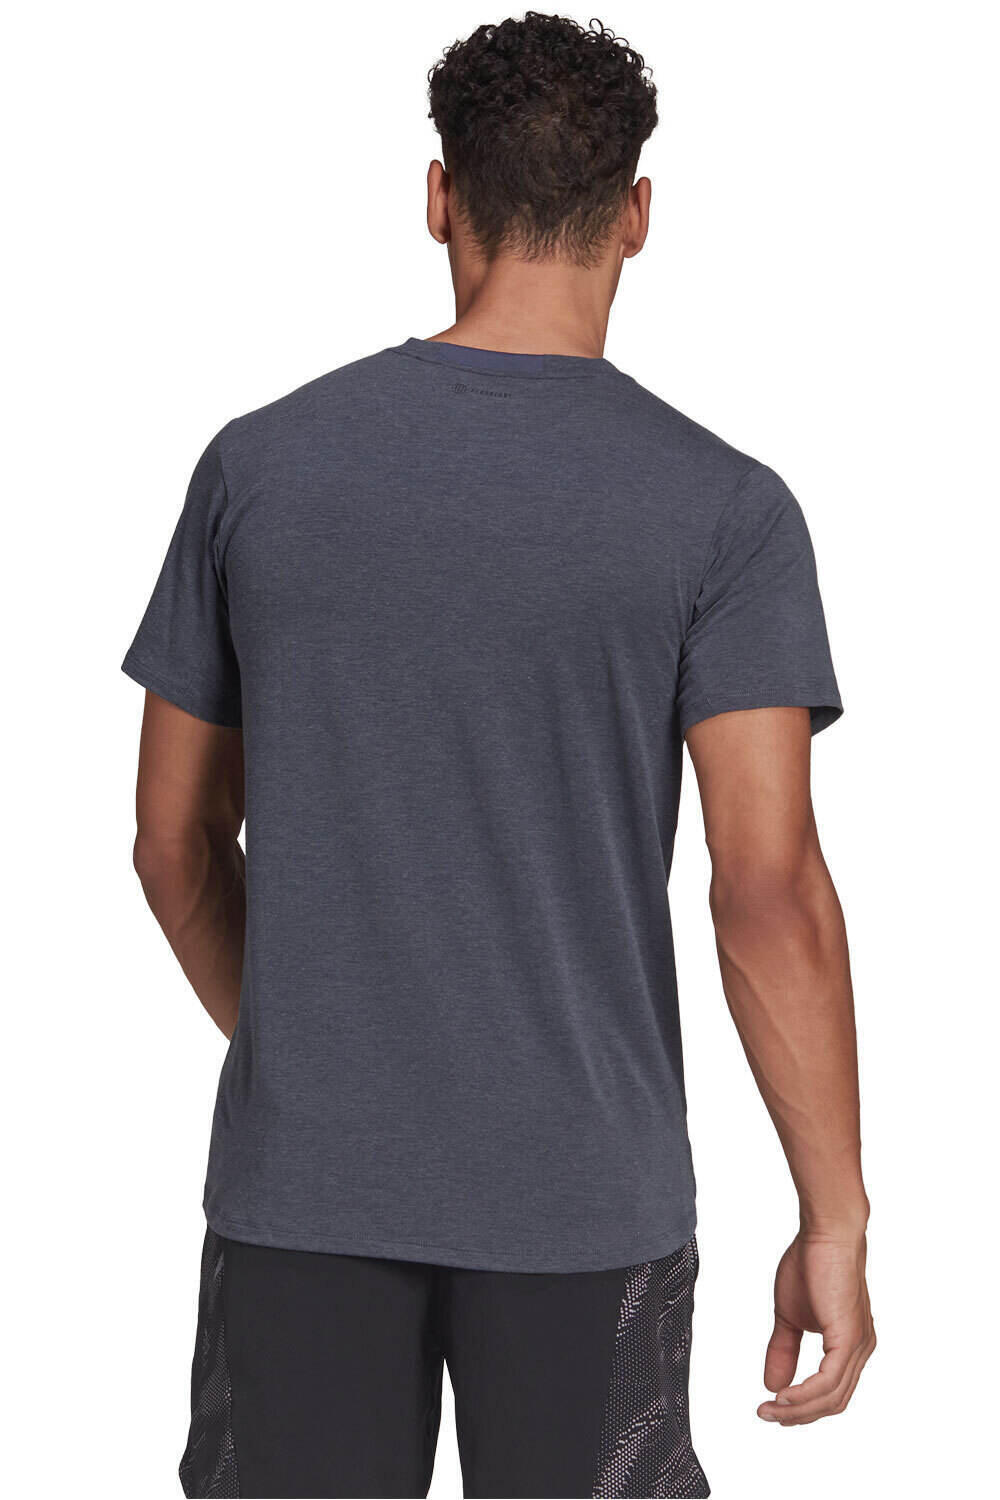 adidas camiseta fitness hombre Designed for Training vista trasera